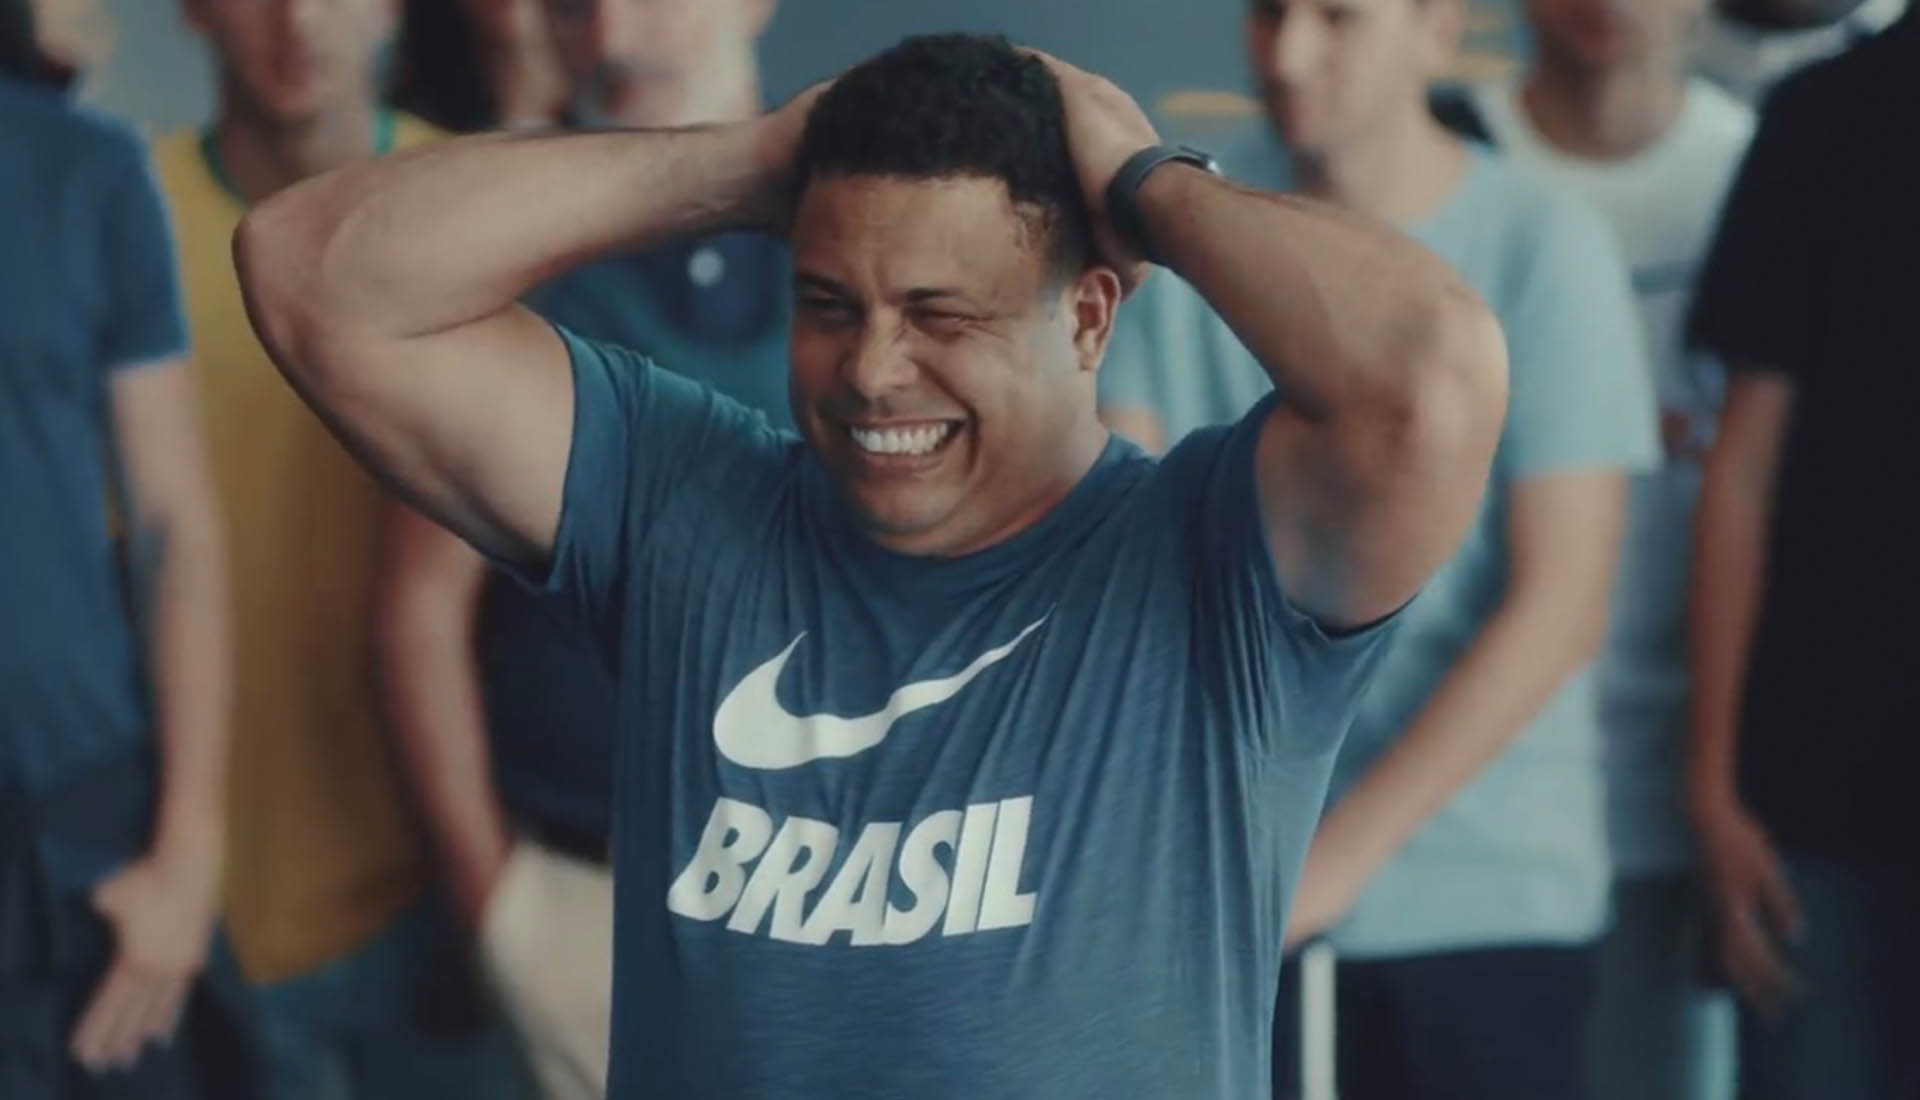 Nike Brasil Launch #Brasileiragem World 